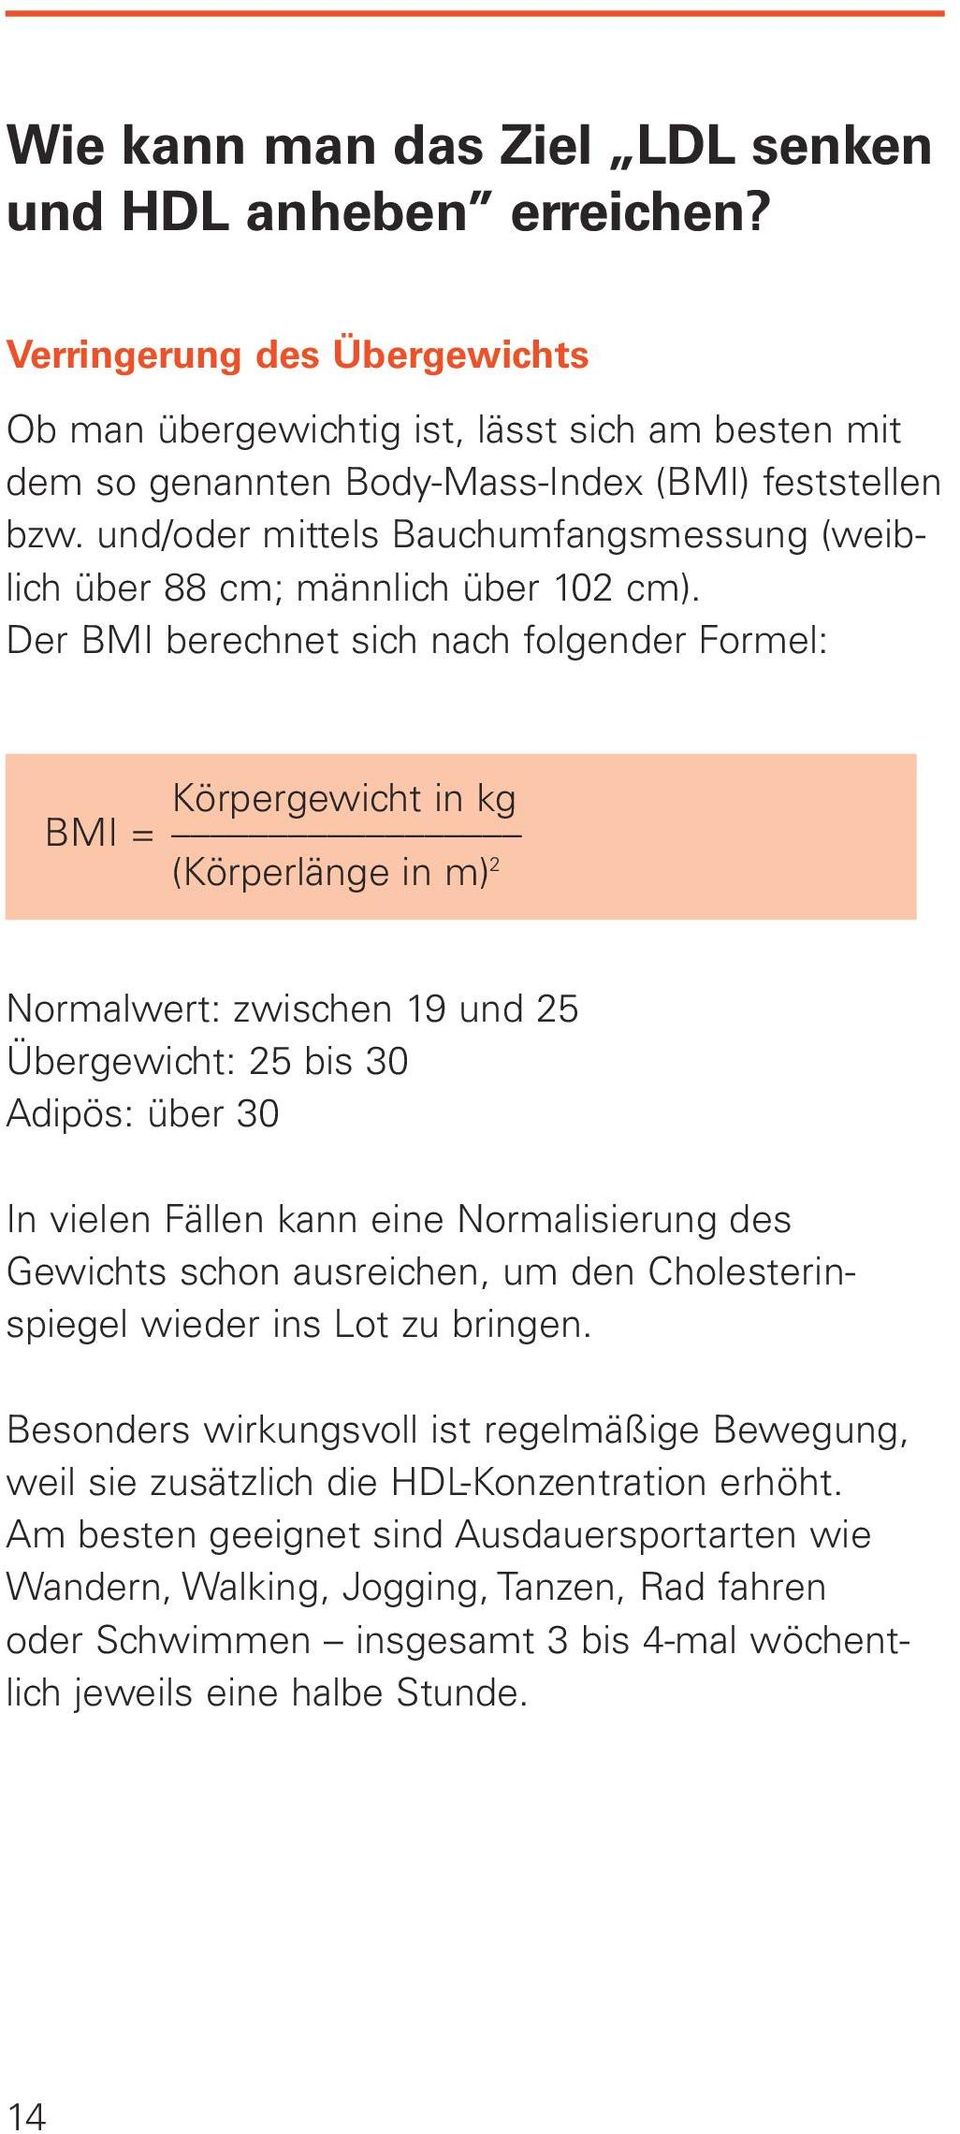 Der BMI berechnet sich nach folgender Formel: Körpergewicht in kg BMI = (Körperlänge in m) 2 Normalwert: zwischen 19 und 25 Übergewicht: 25 bis 30 Adipös: über 30 In vielen Fällen kann eine